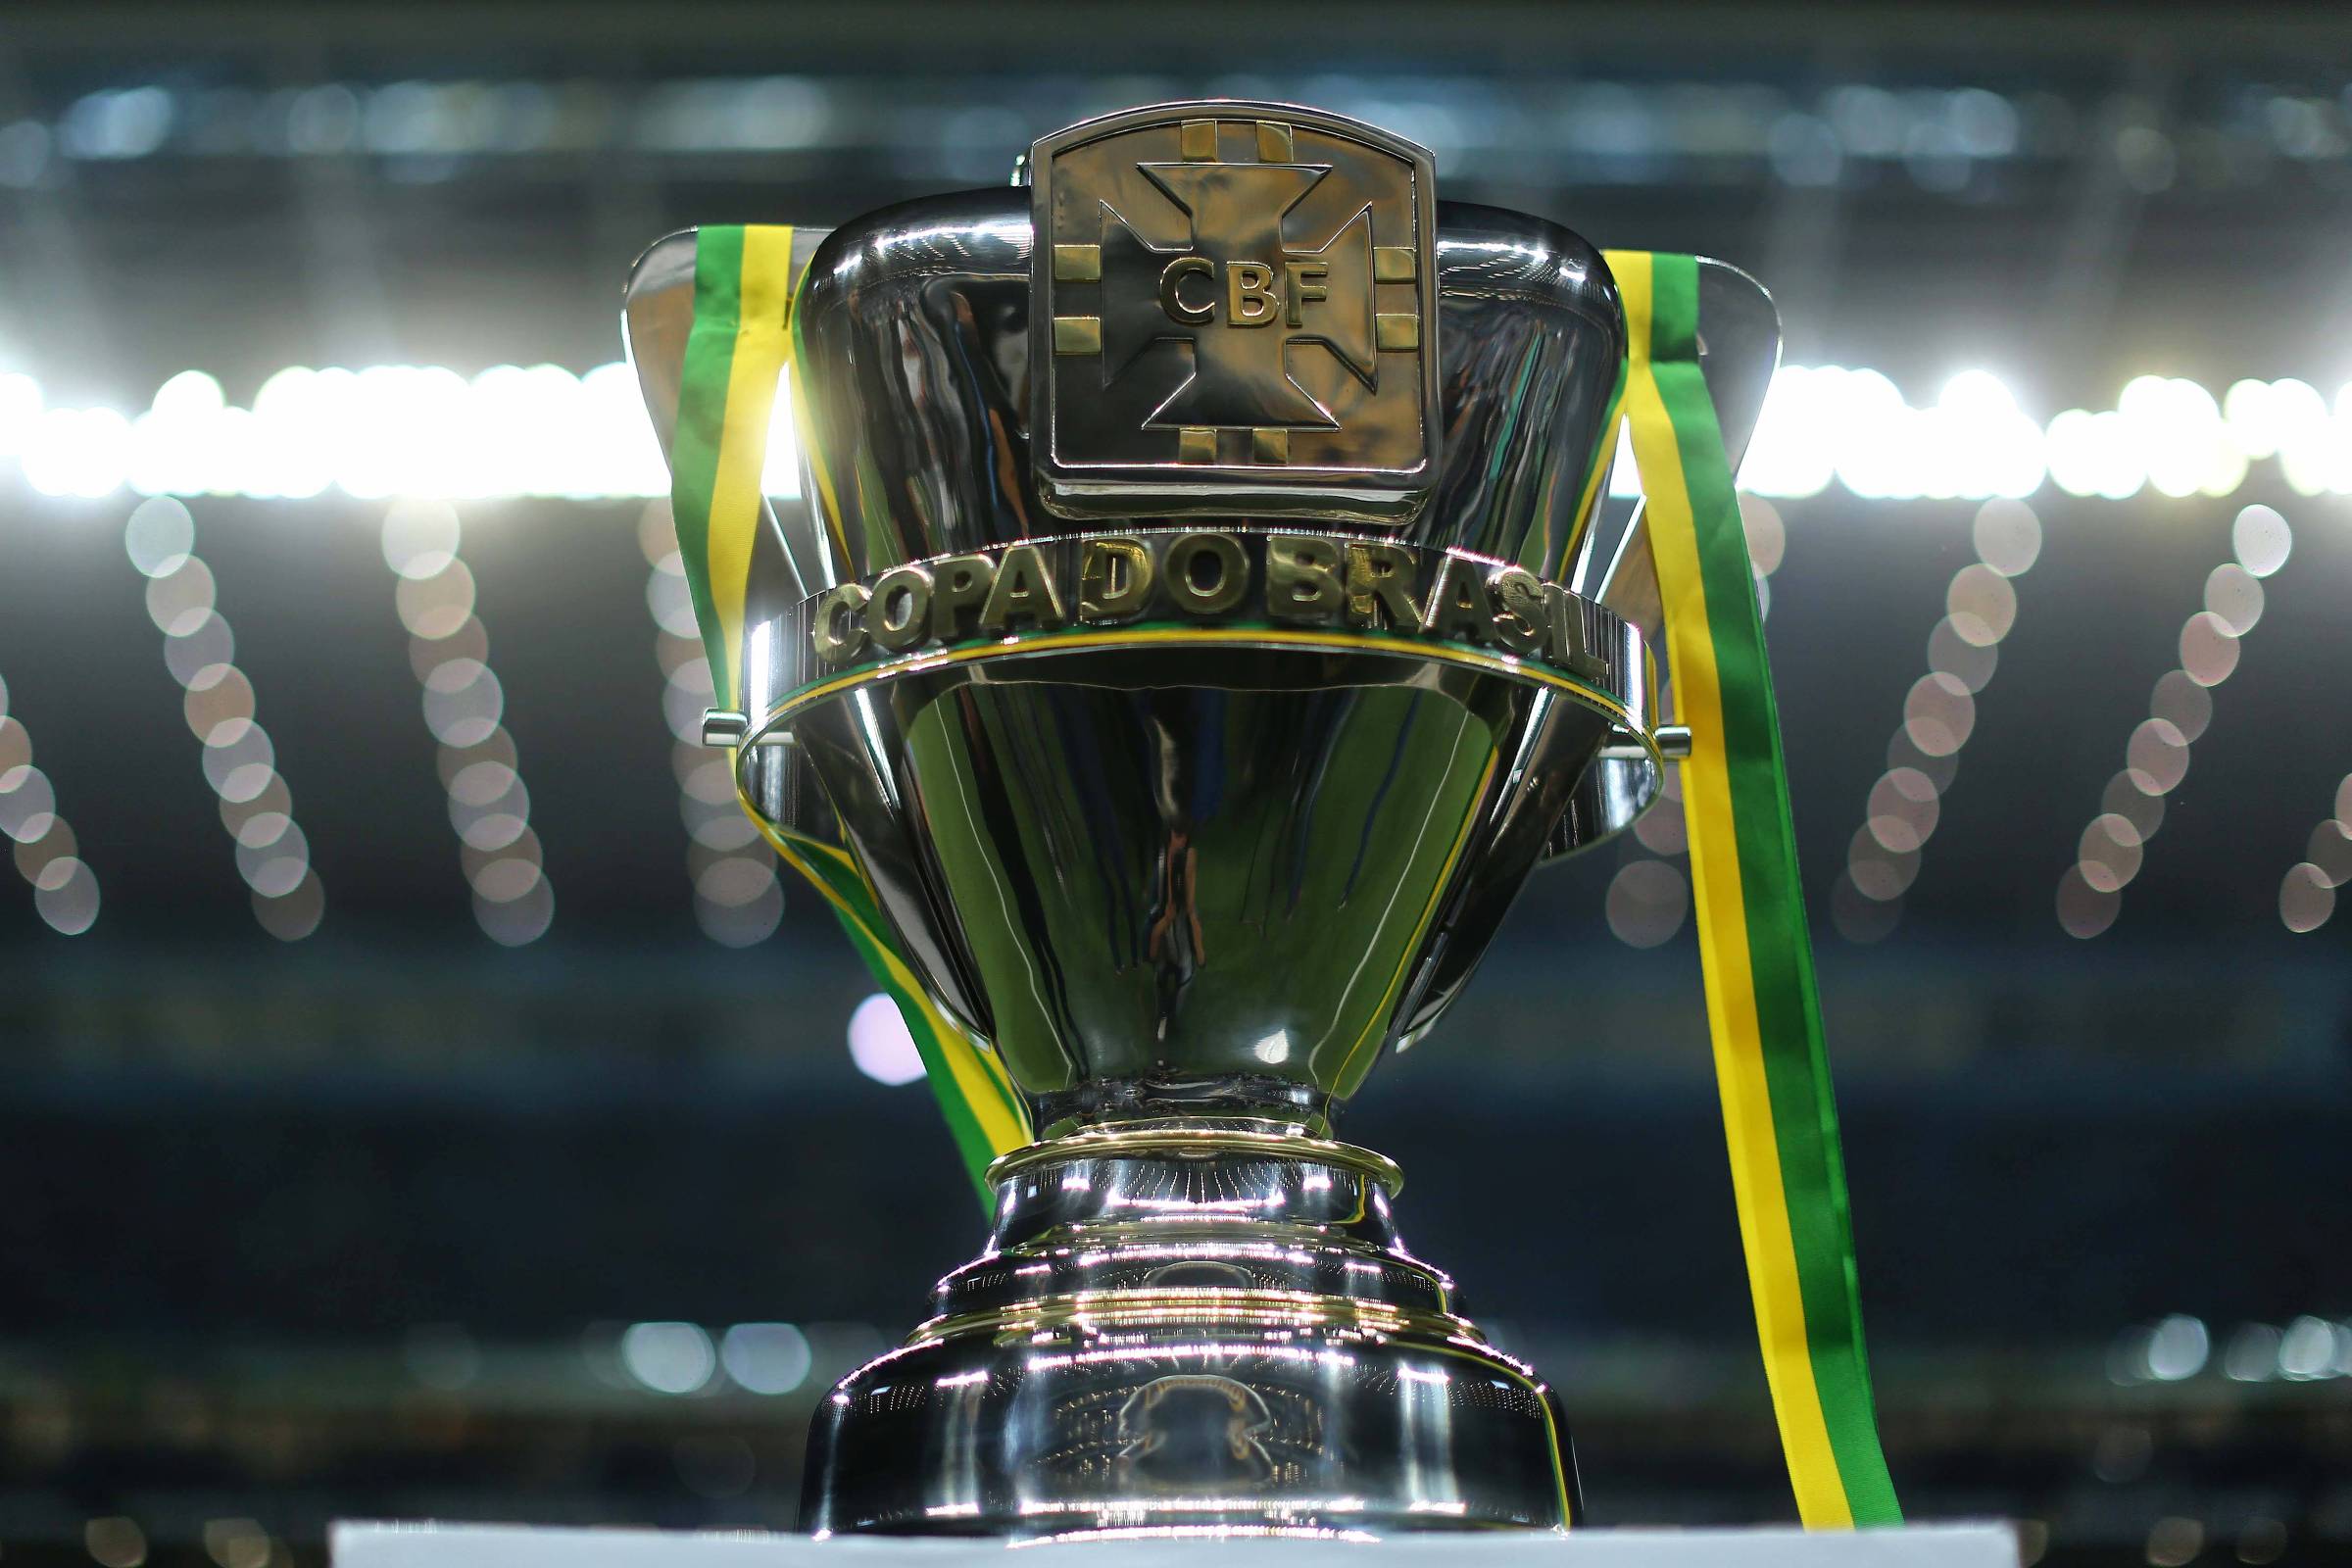 São Paulo - SP 9 x 1 4 de Julho - PI - Copa do Brasil de Futebol 2021 -  Confederação Brasileira de Futebol, jogo agora sao paulo